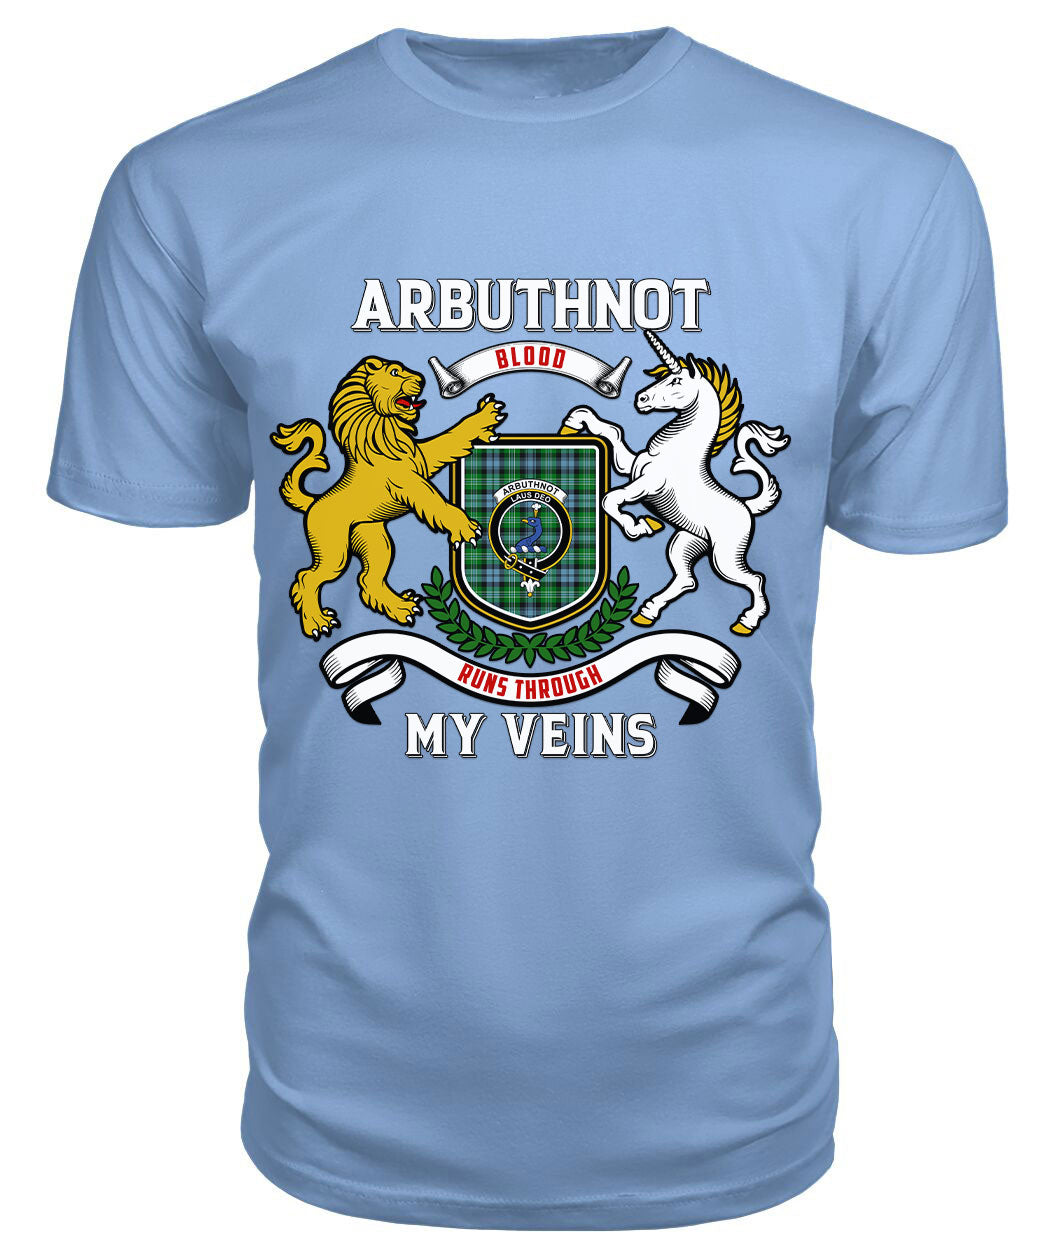 Arbuthnot Ancient Tartan Crest 2D T-shirt - Blood Runs Through My Veins Style